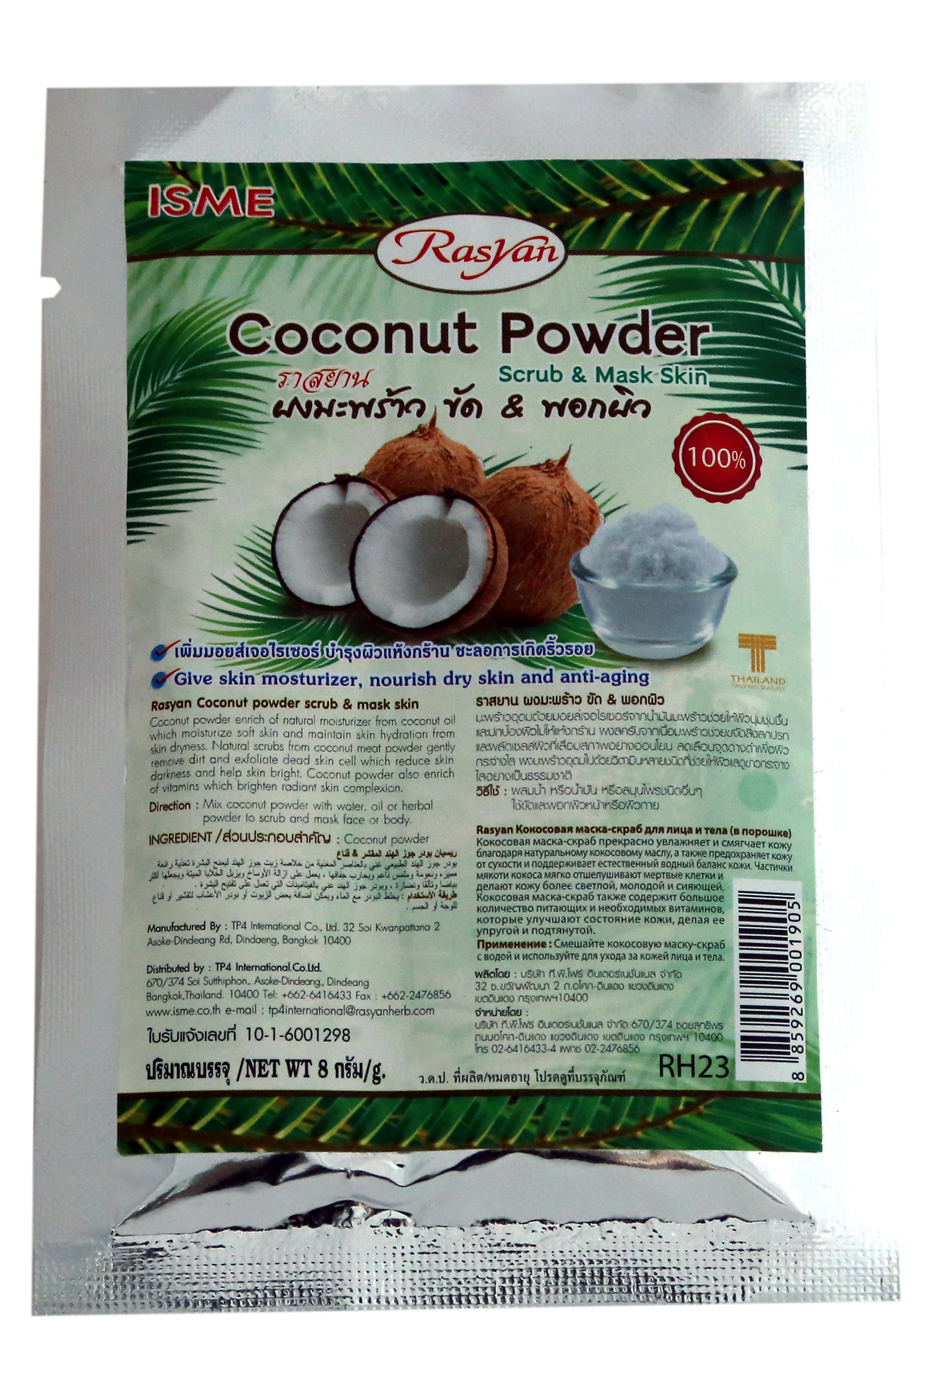 COCONUT POWDER Scrub & Mask Skin, ISME (Натуральная увлажняющая скраб-маска в порошке из кокоса для борьбы с возрастными изменениями кожи лица и тела, ИСМЕ), 8 г.